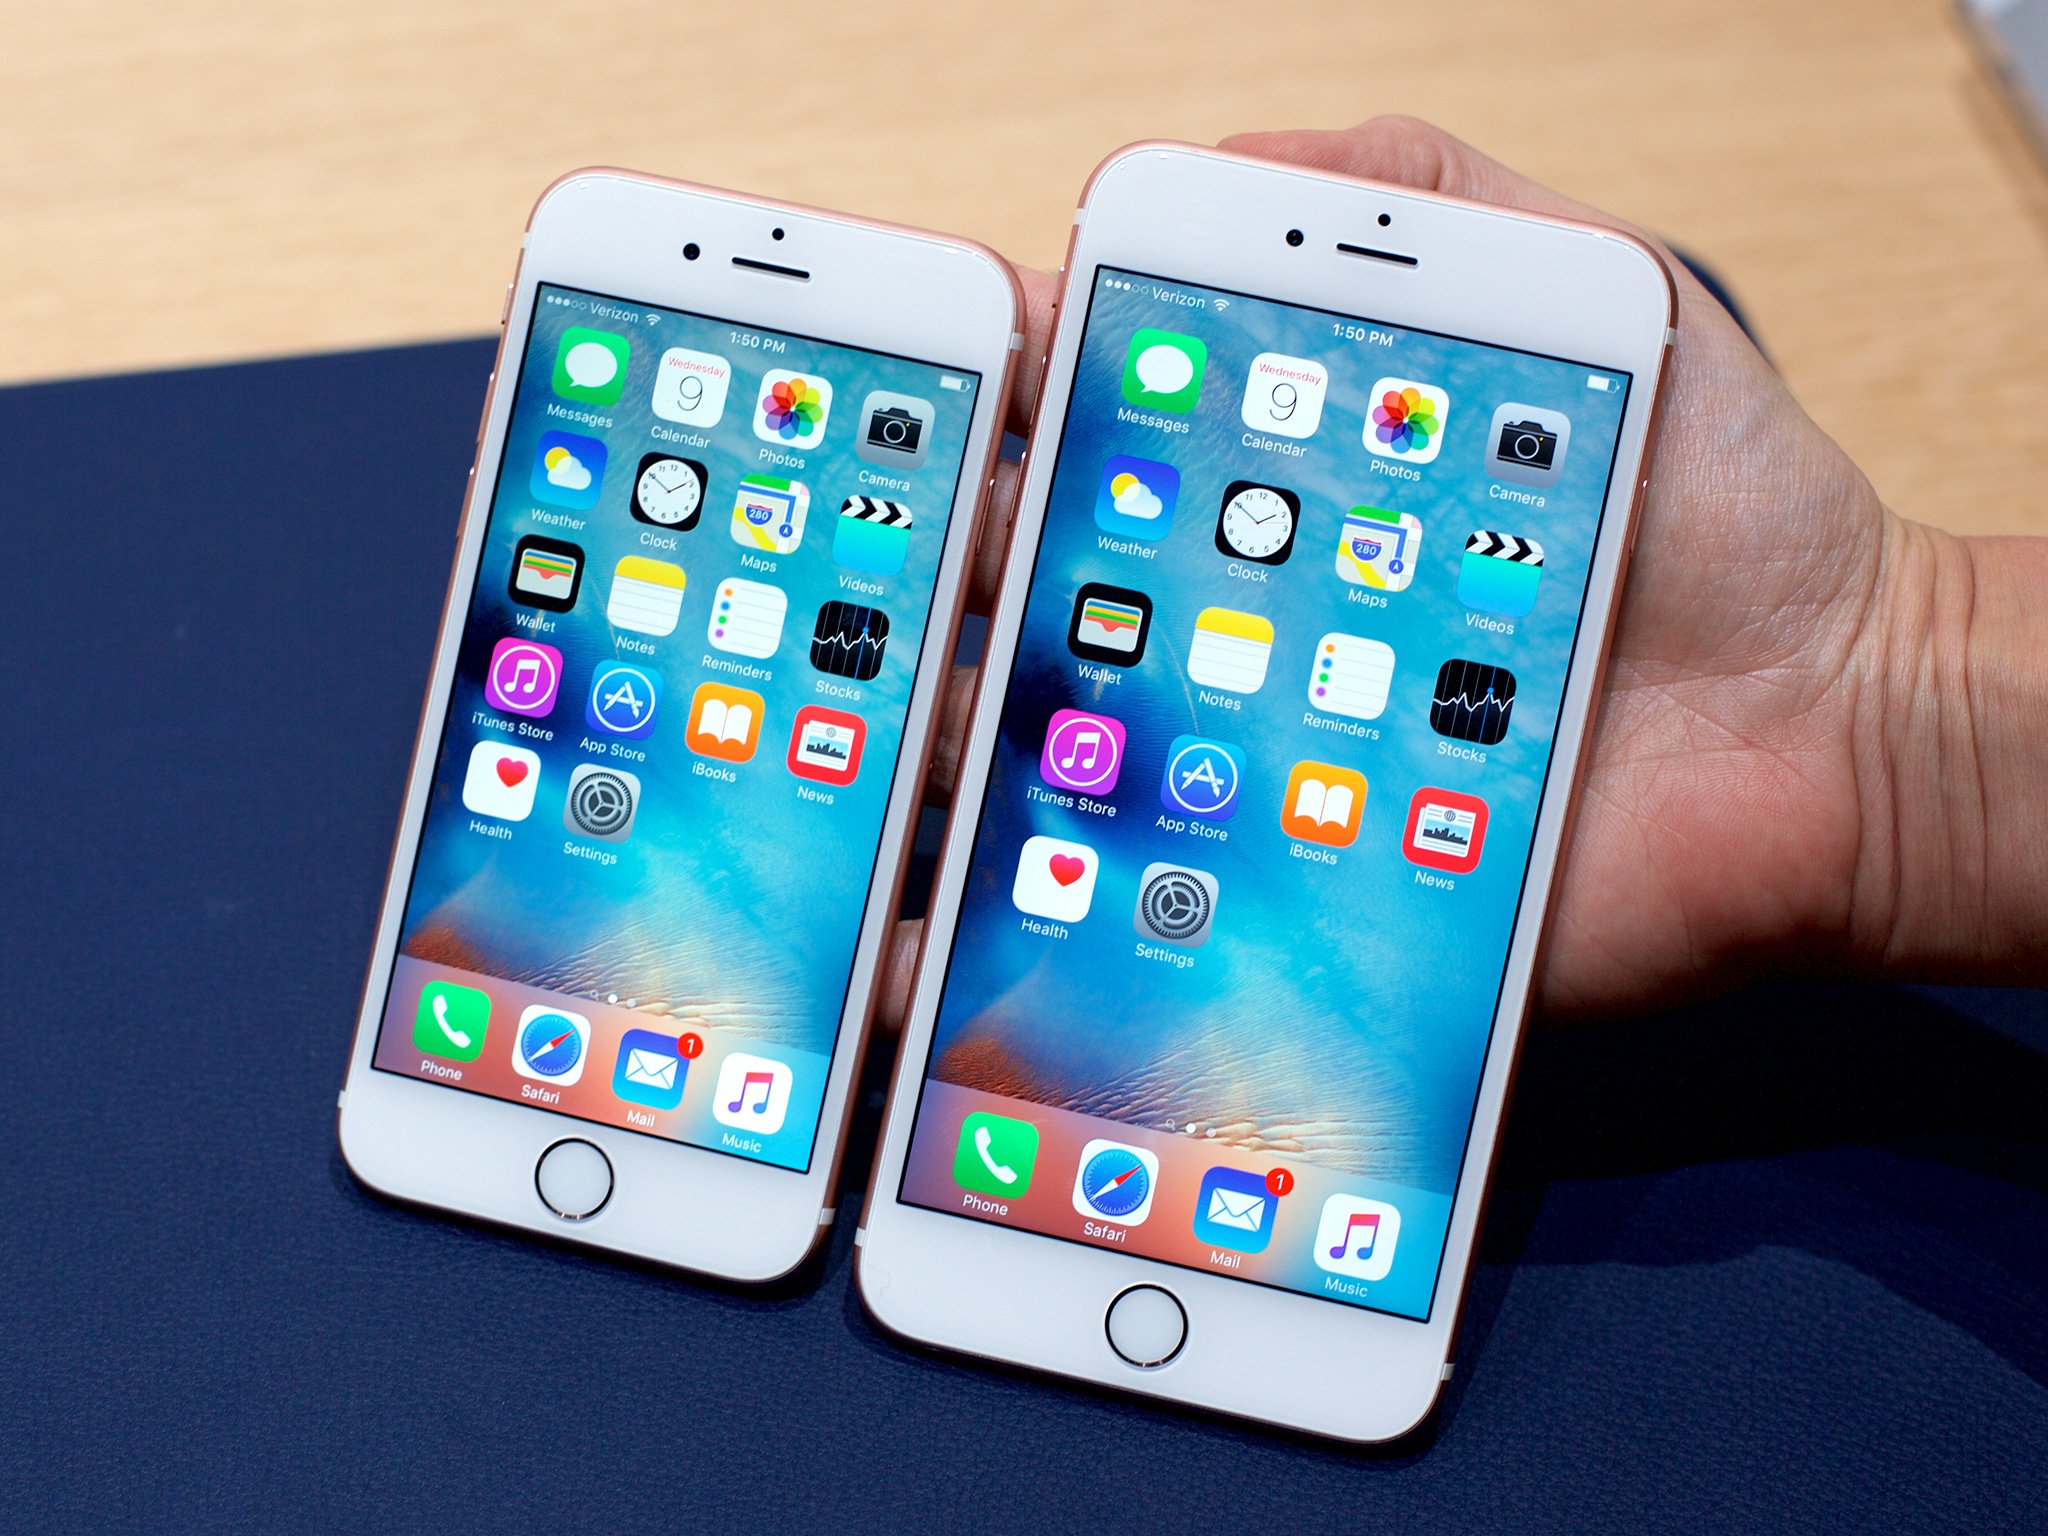 iPhone 6, iPhone 6 Plus, iPhone 6s y iPhone 6s Plus a precios sorprendentemente bajos